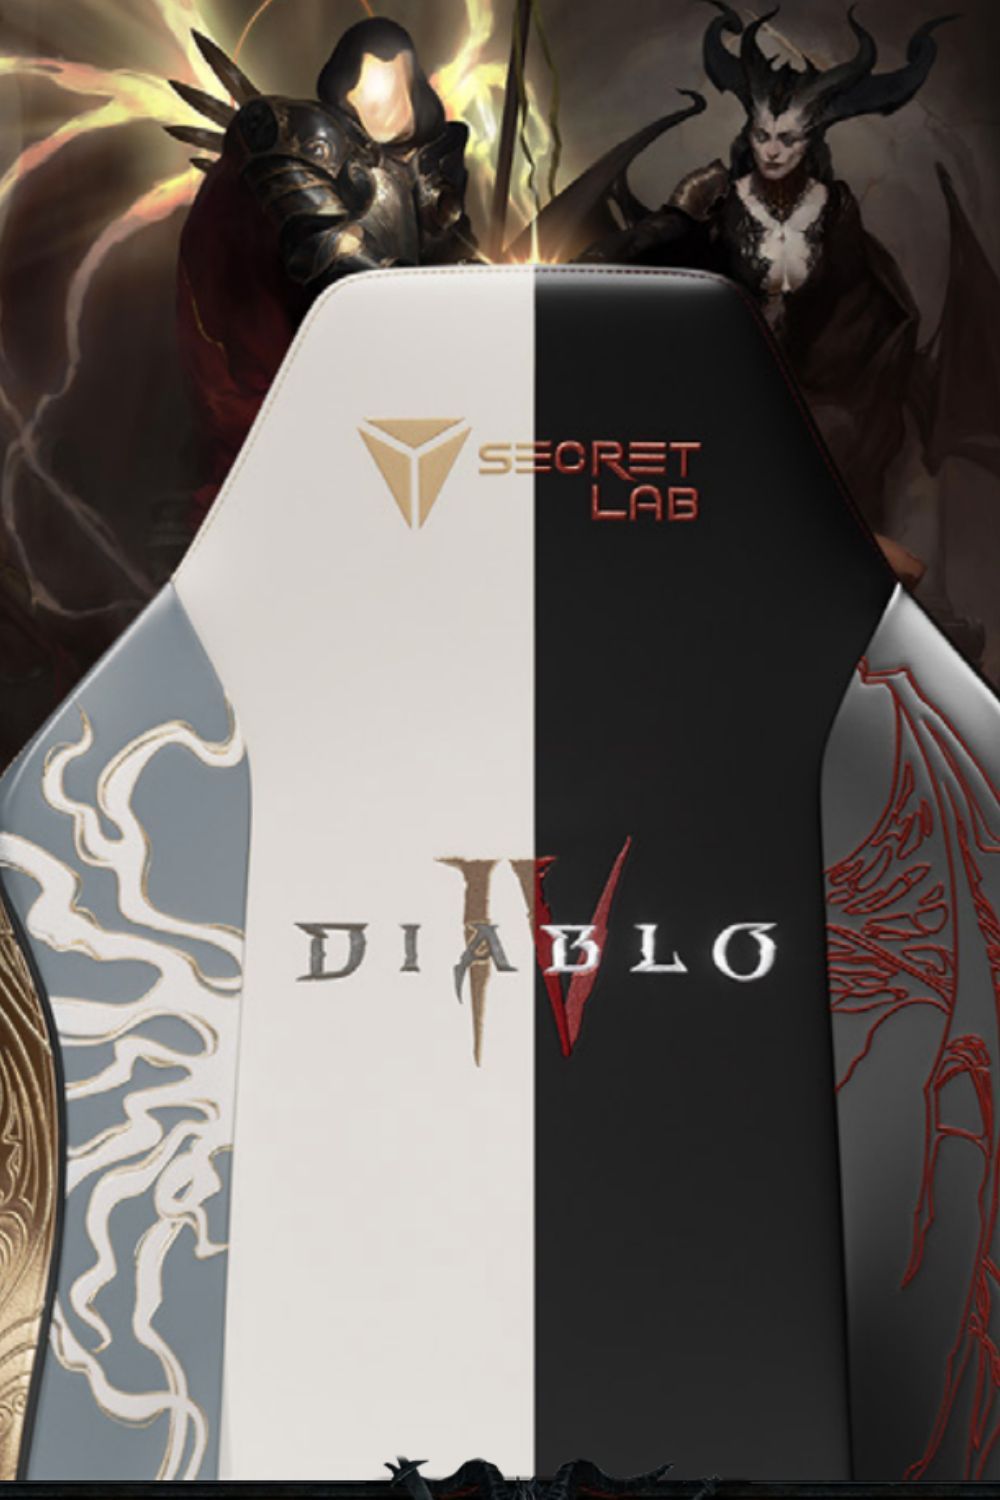 Secretlab Diablo 4 gaming chair release